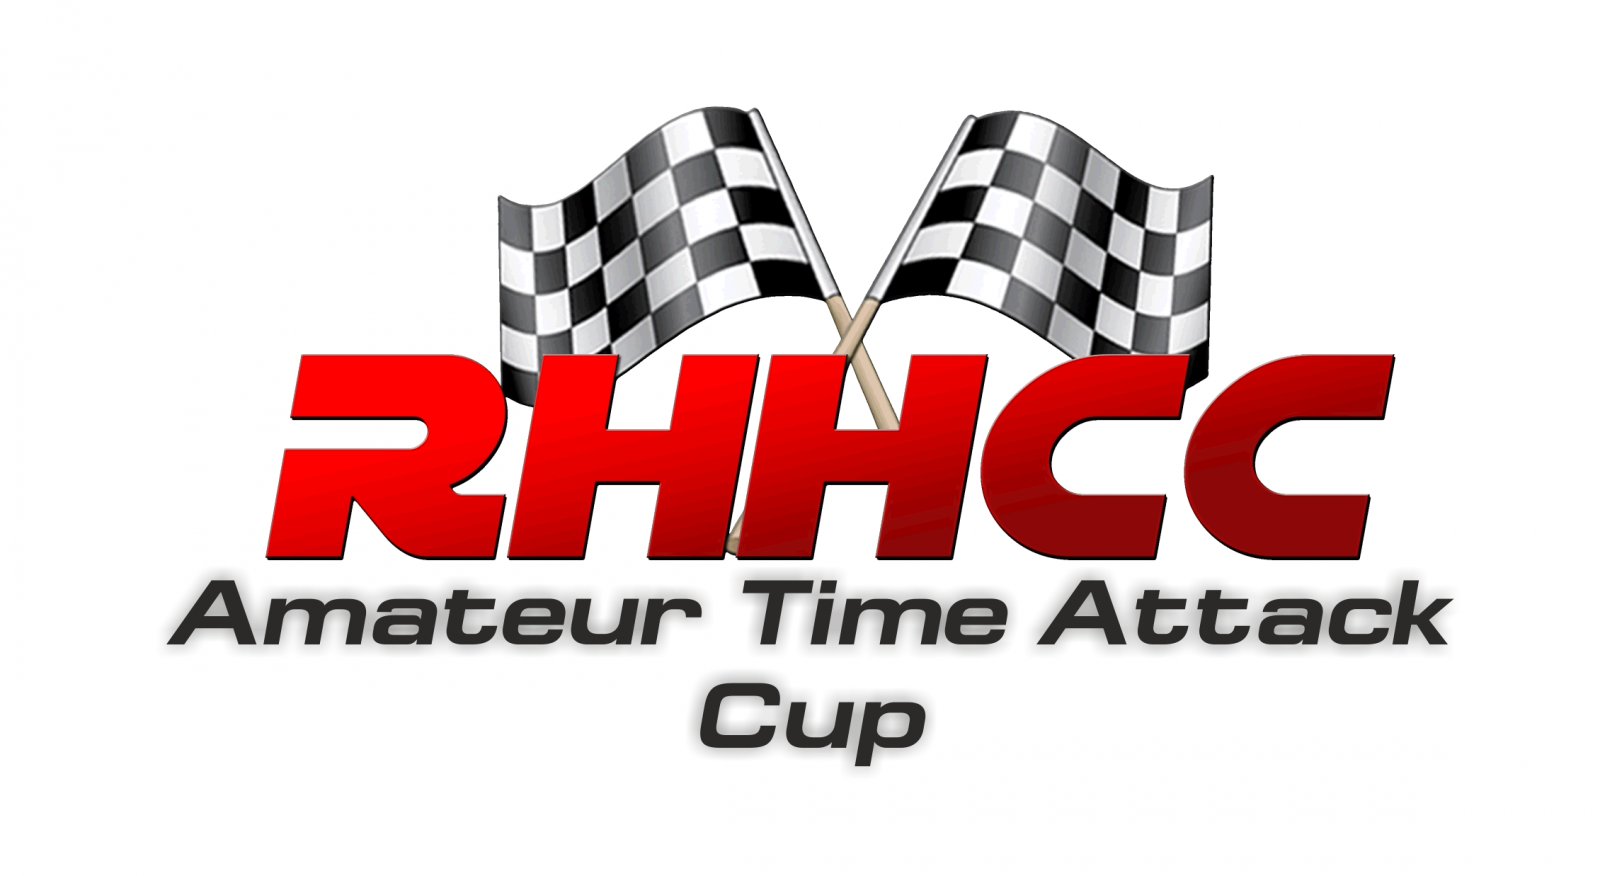 RHHCC ATAC 2018